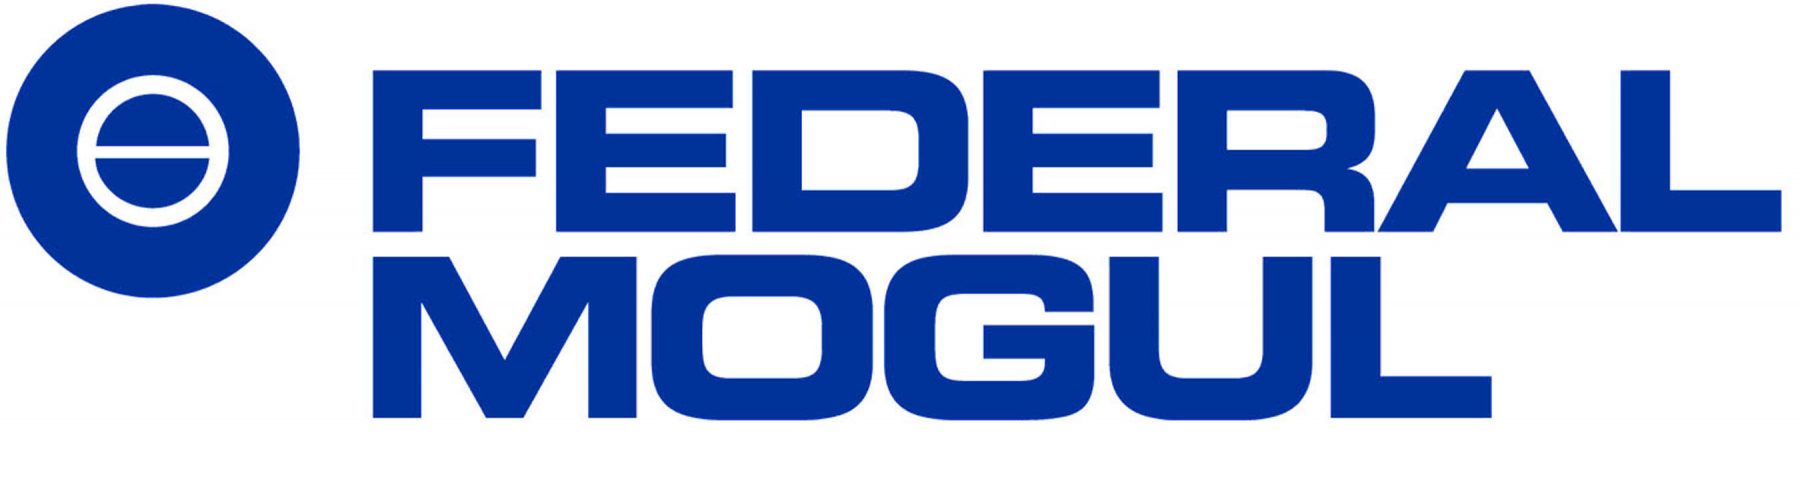 Federal-Mogul-logo.jpg